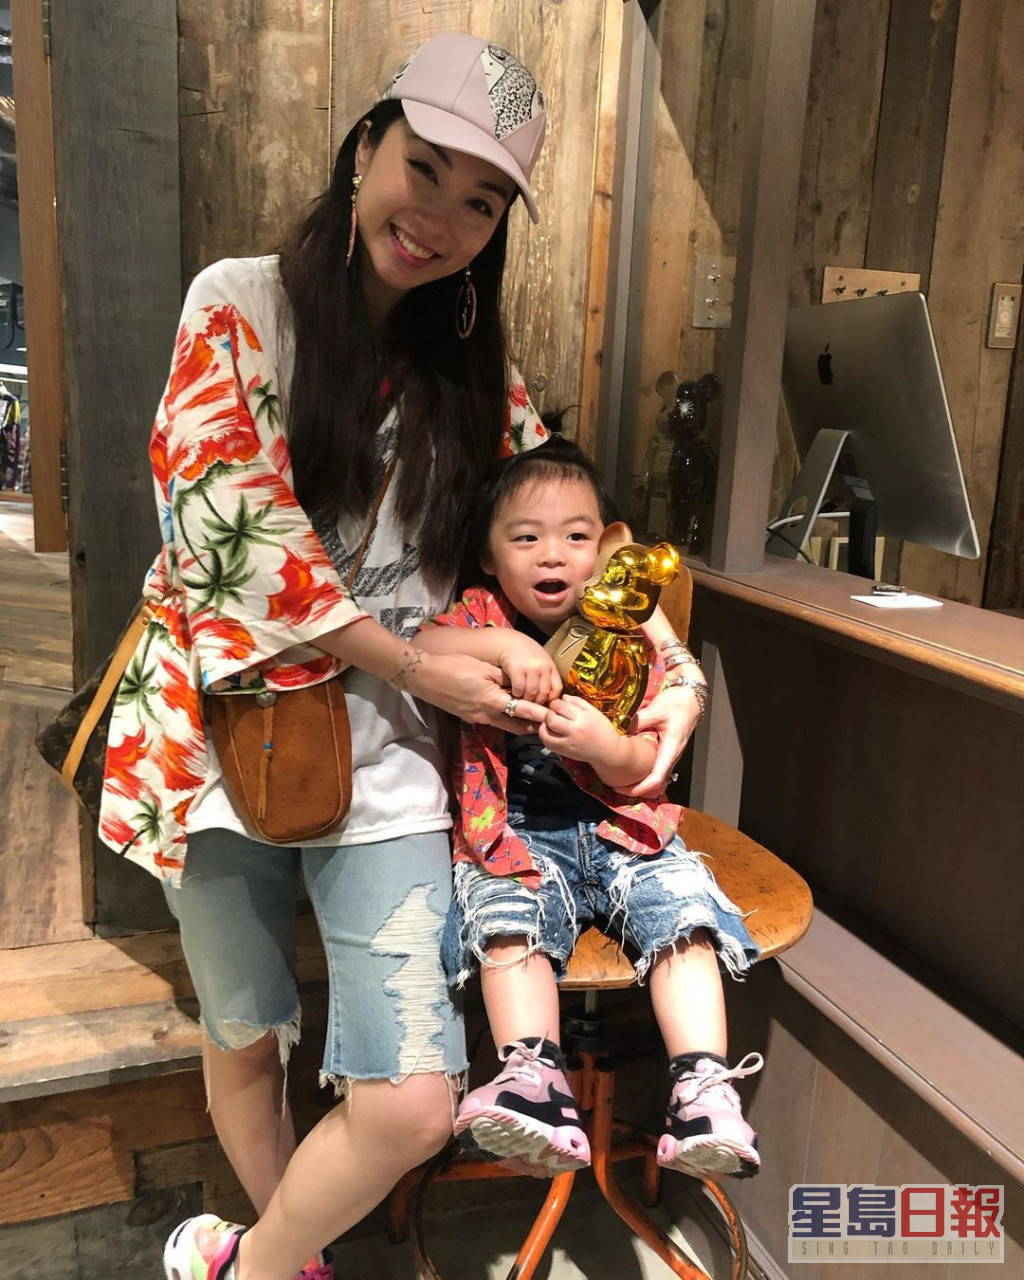 雷凱欣2018年分享榮升媽媽喜悅。